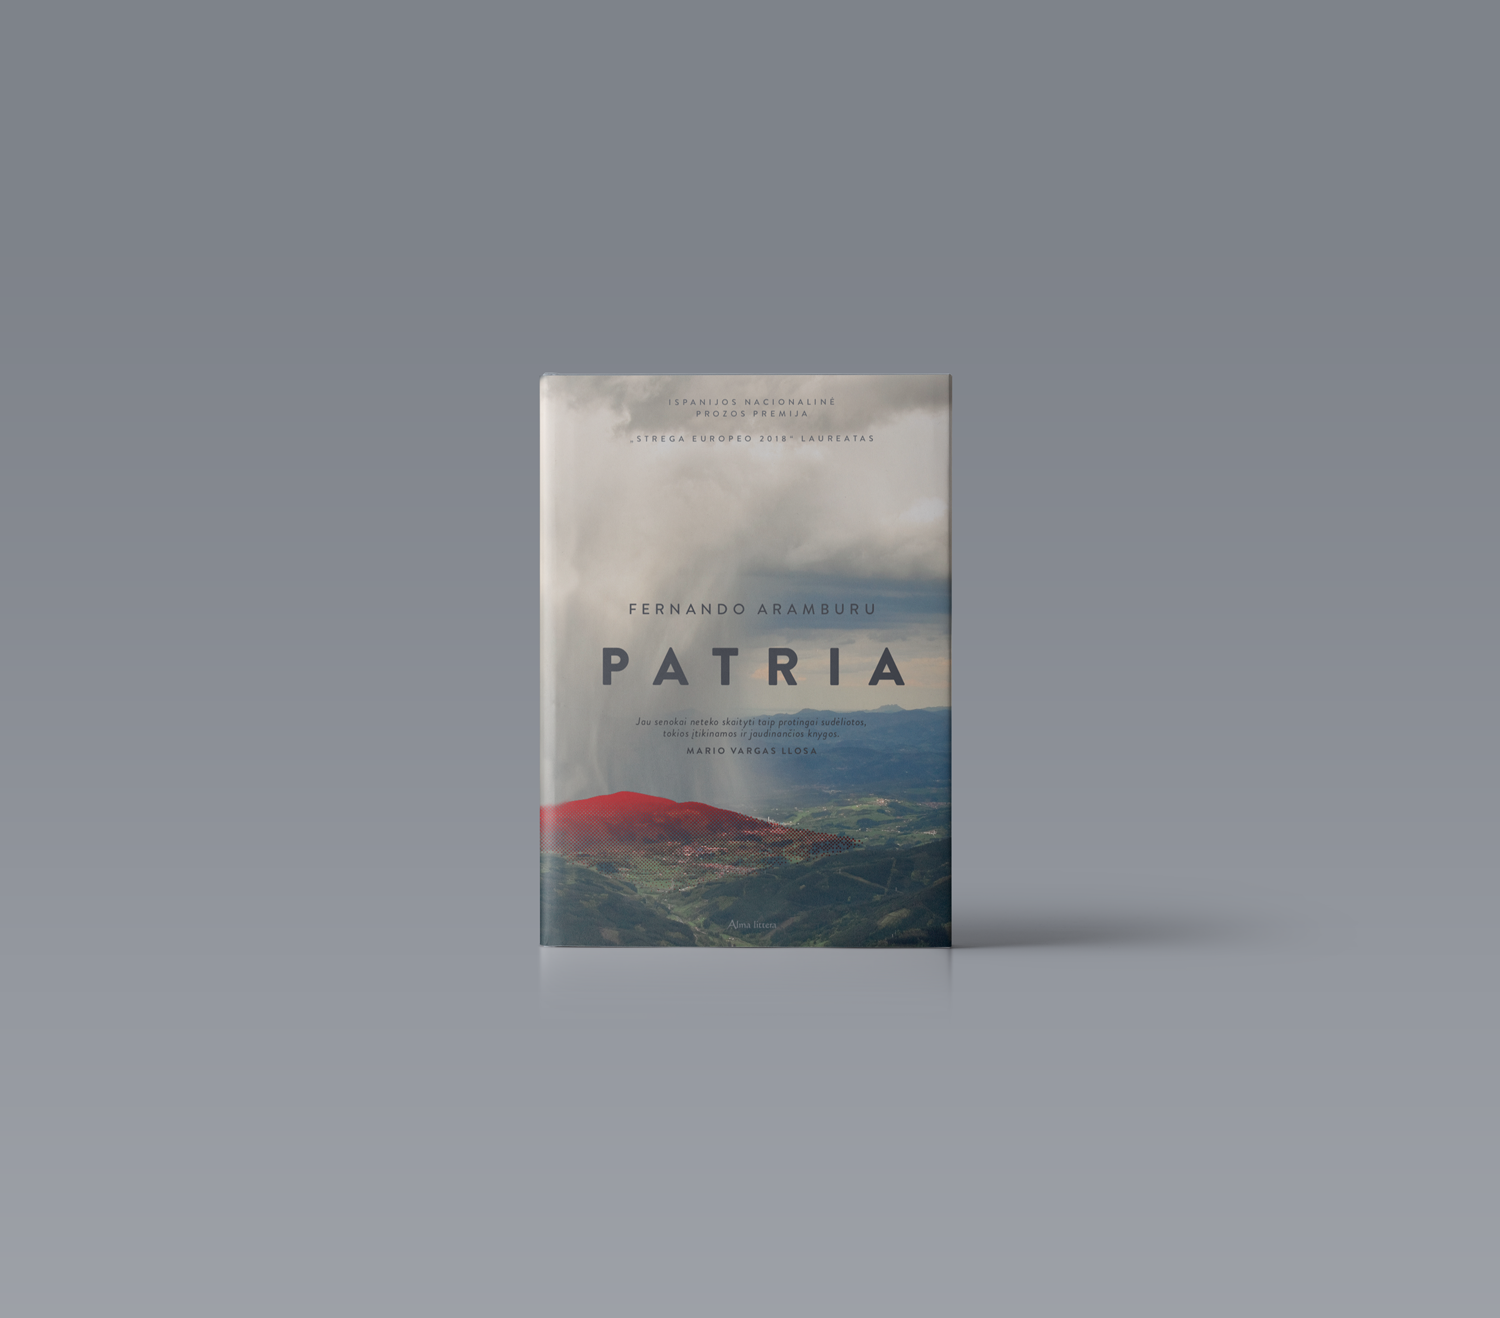 Patria, by F.Aramburu